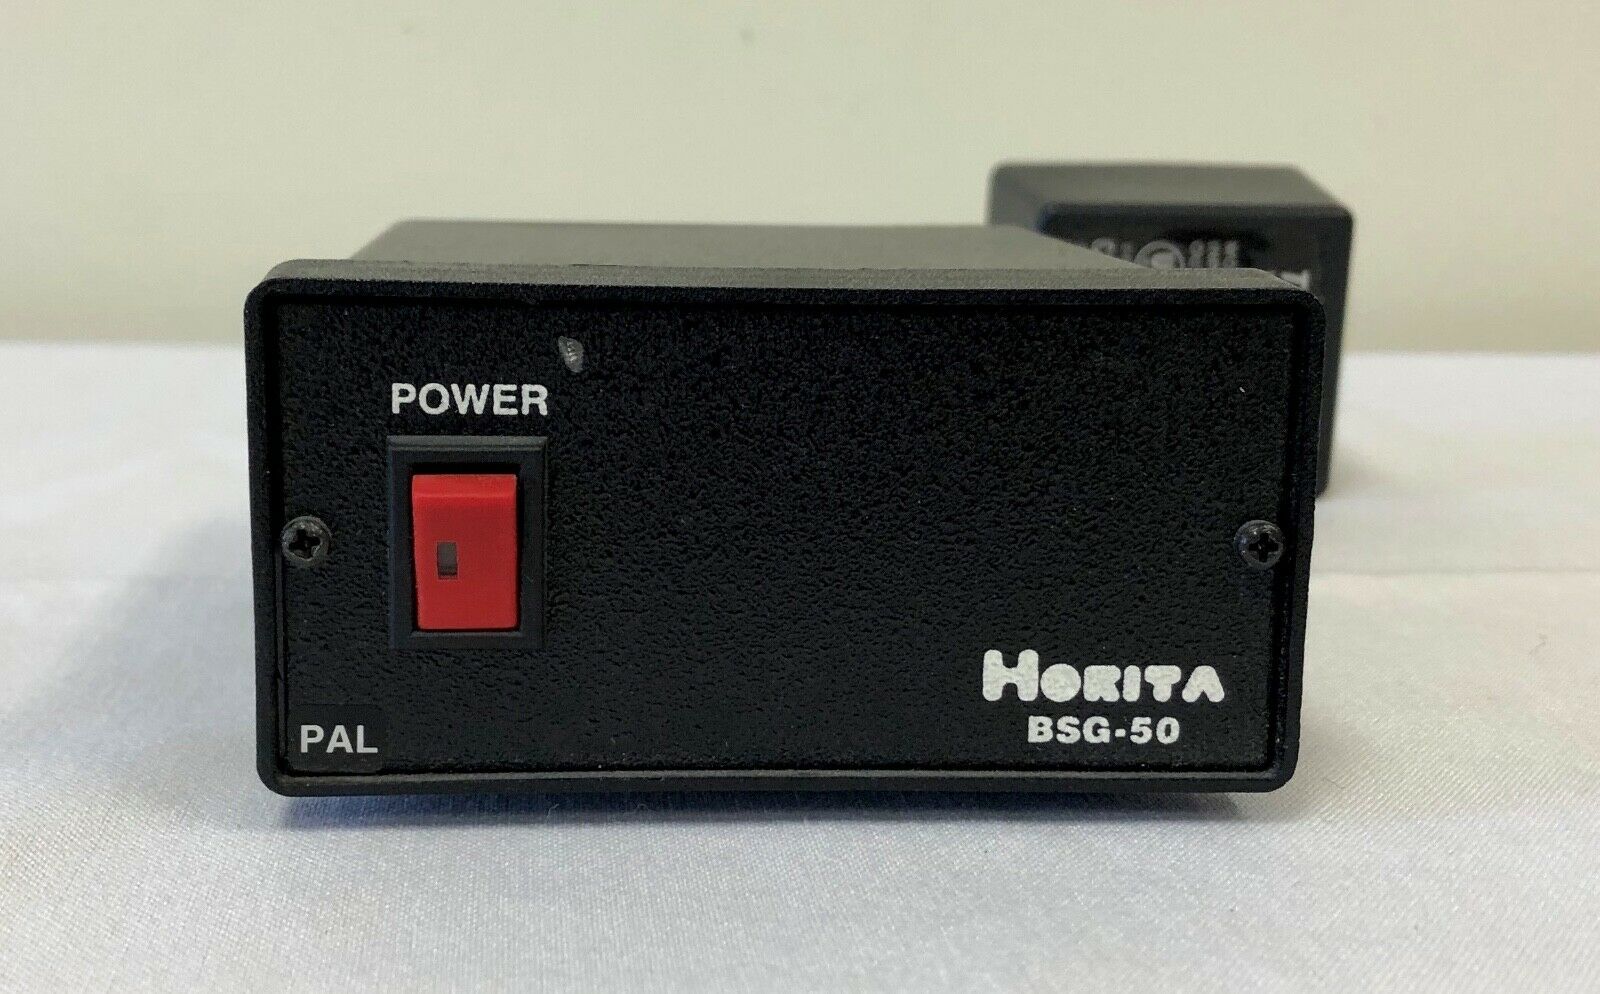 Horita Bsg-50 Blackburst Sync Generator (pal)